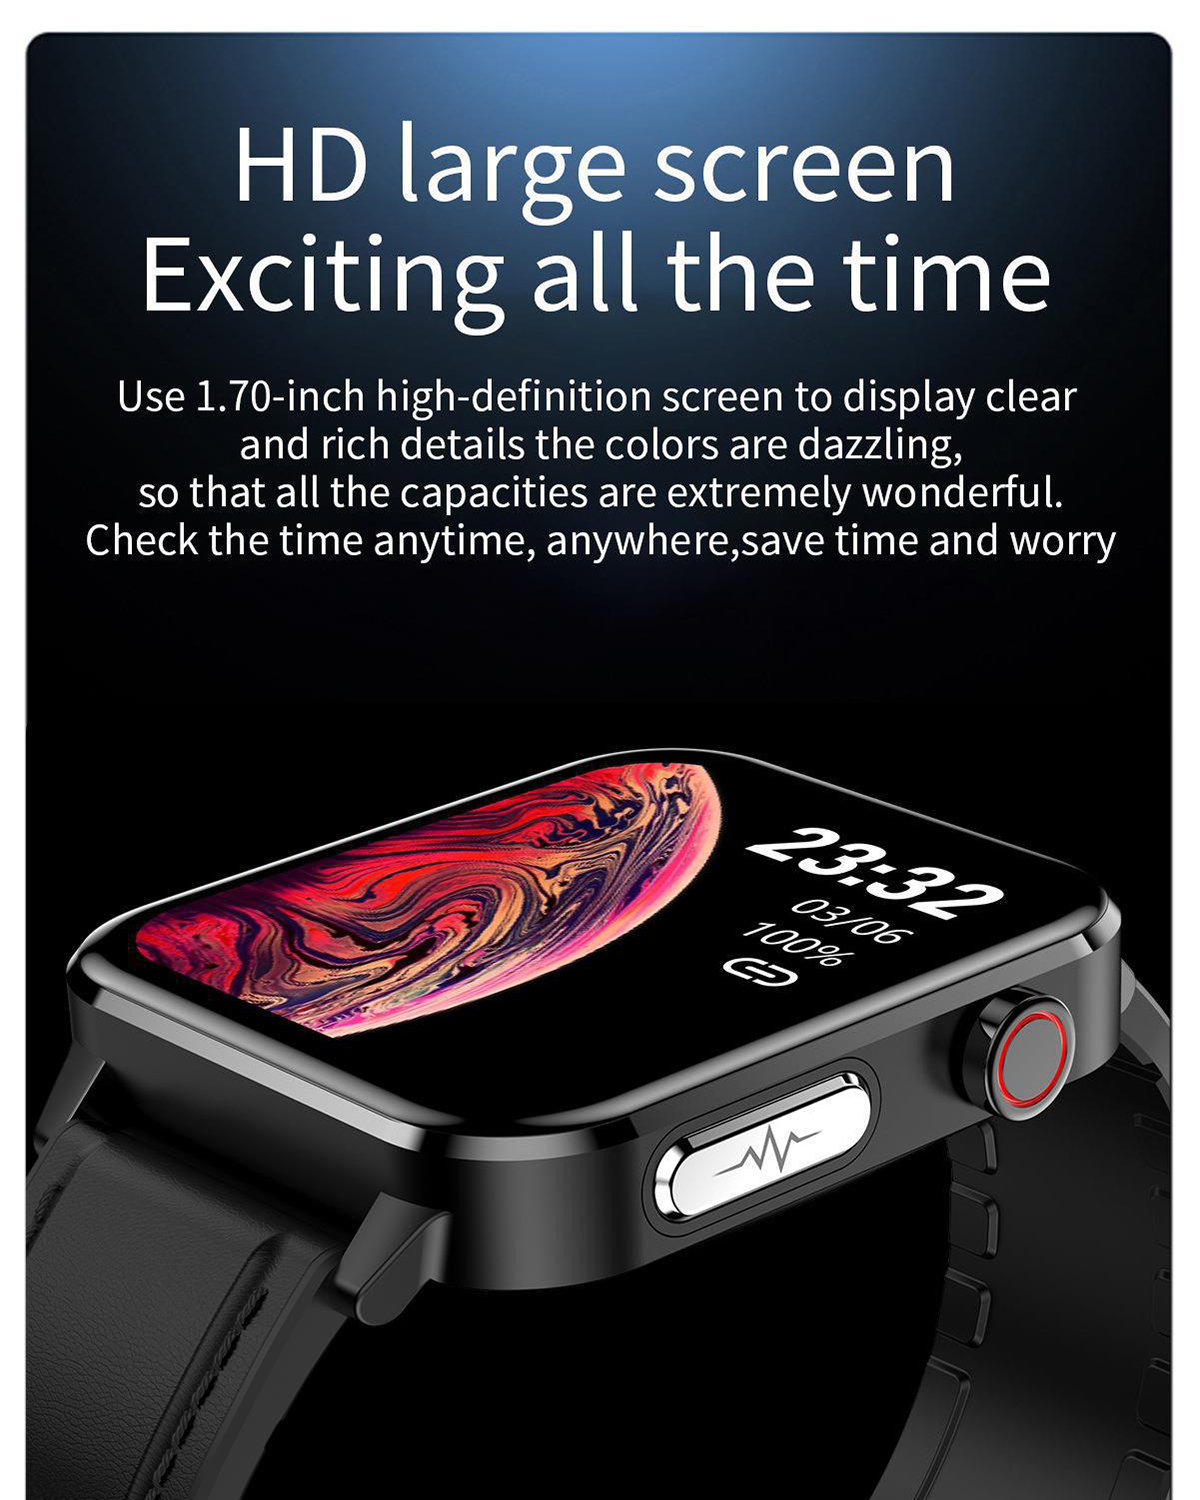 BRIGHTAKE Ultralange Akkulaufzeit! Die Smartwatch, Leben Rot Ihr Silikon, verändert Smartwatch die